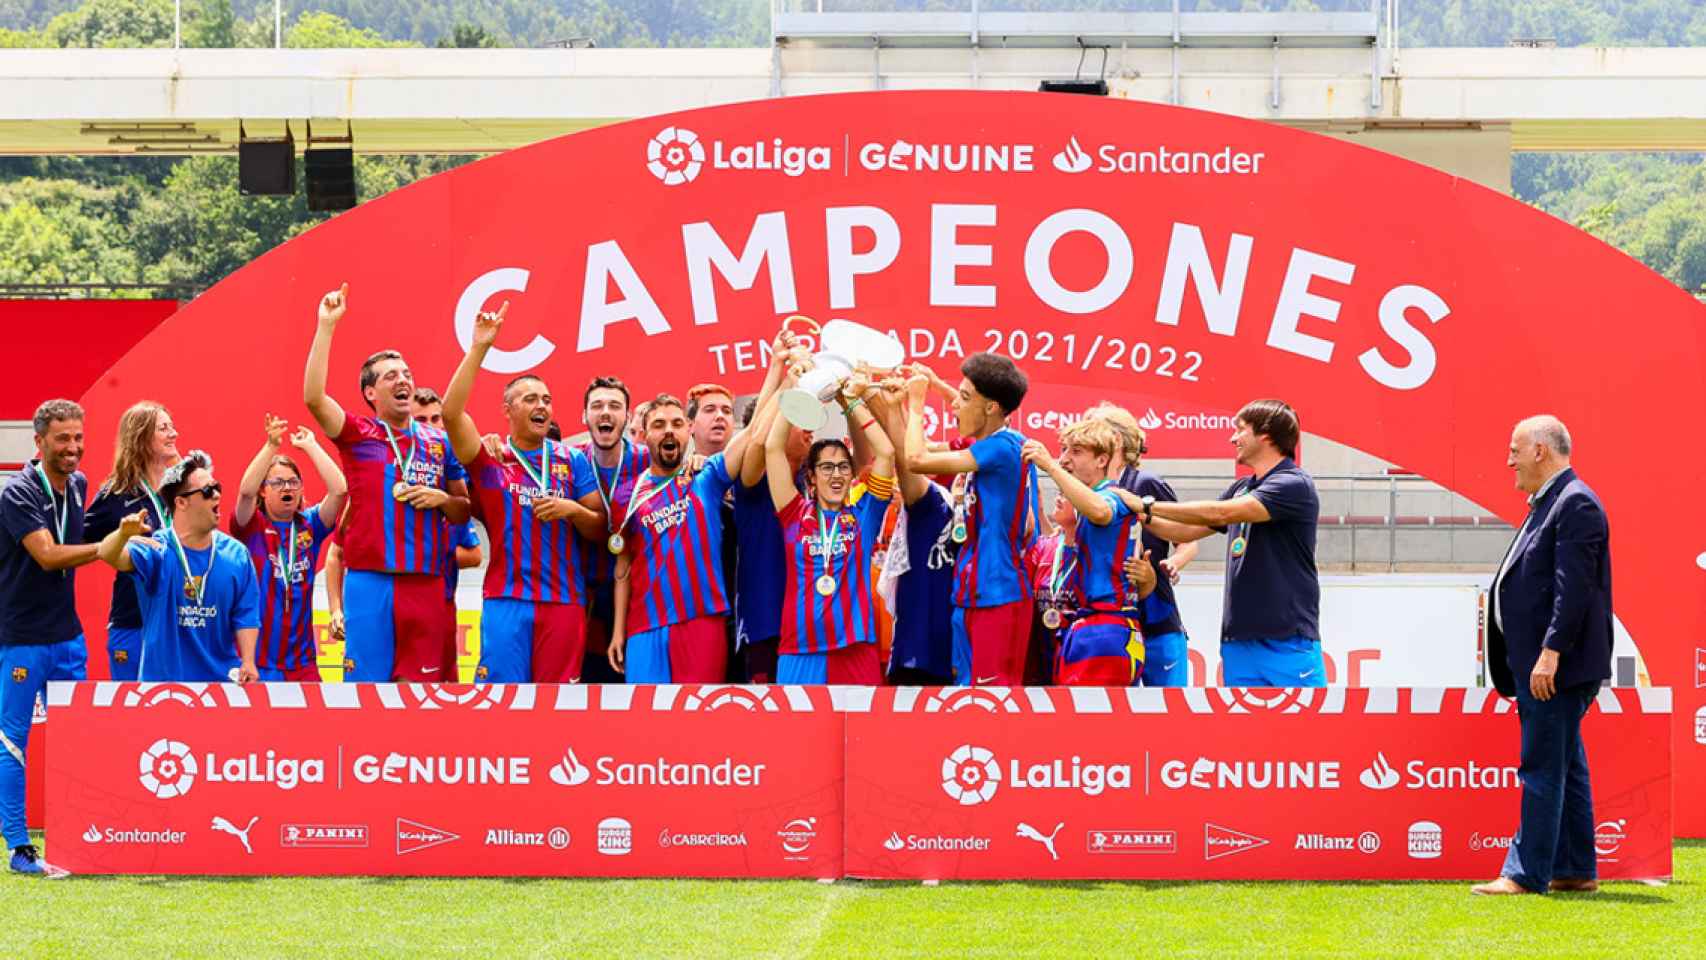 La Fundación Barça, celebrando el campeonato en la Liga Genuine Santander / FCB